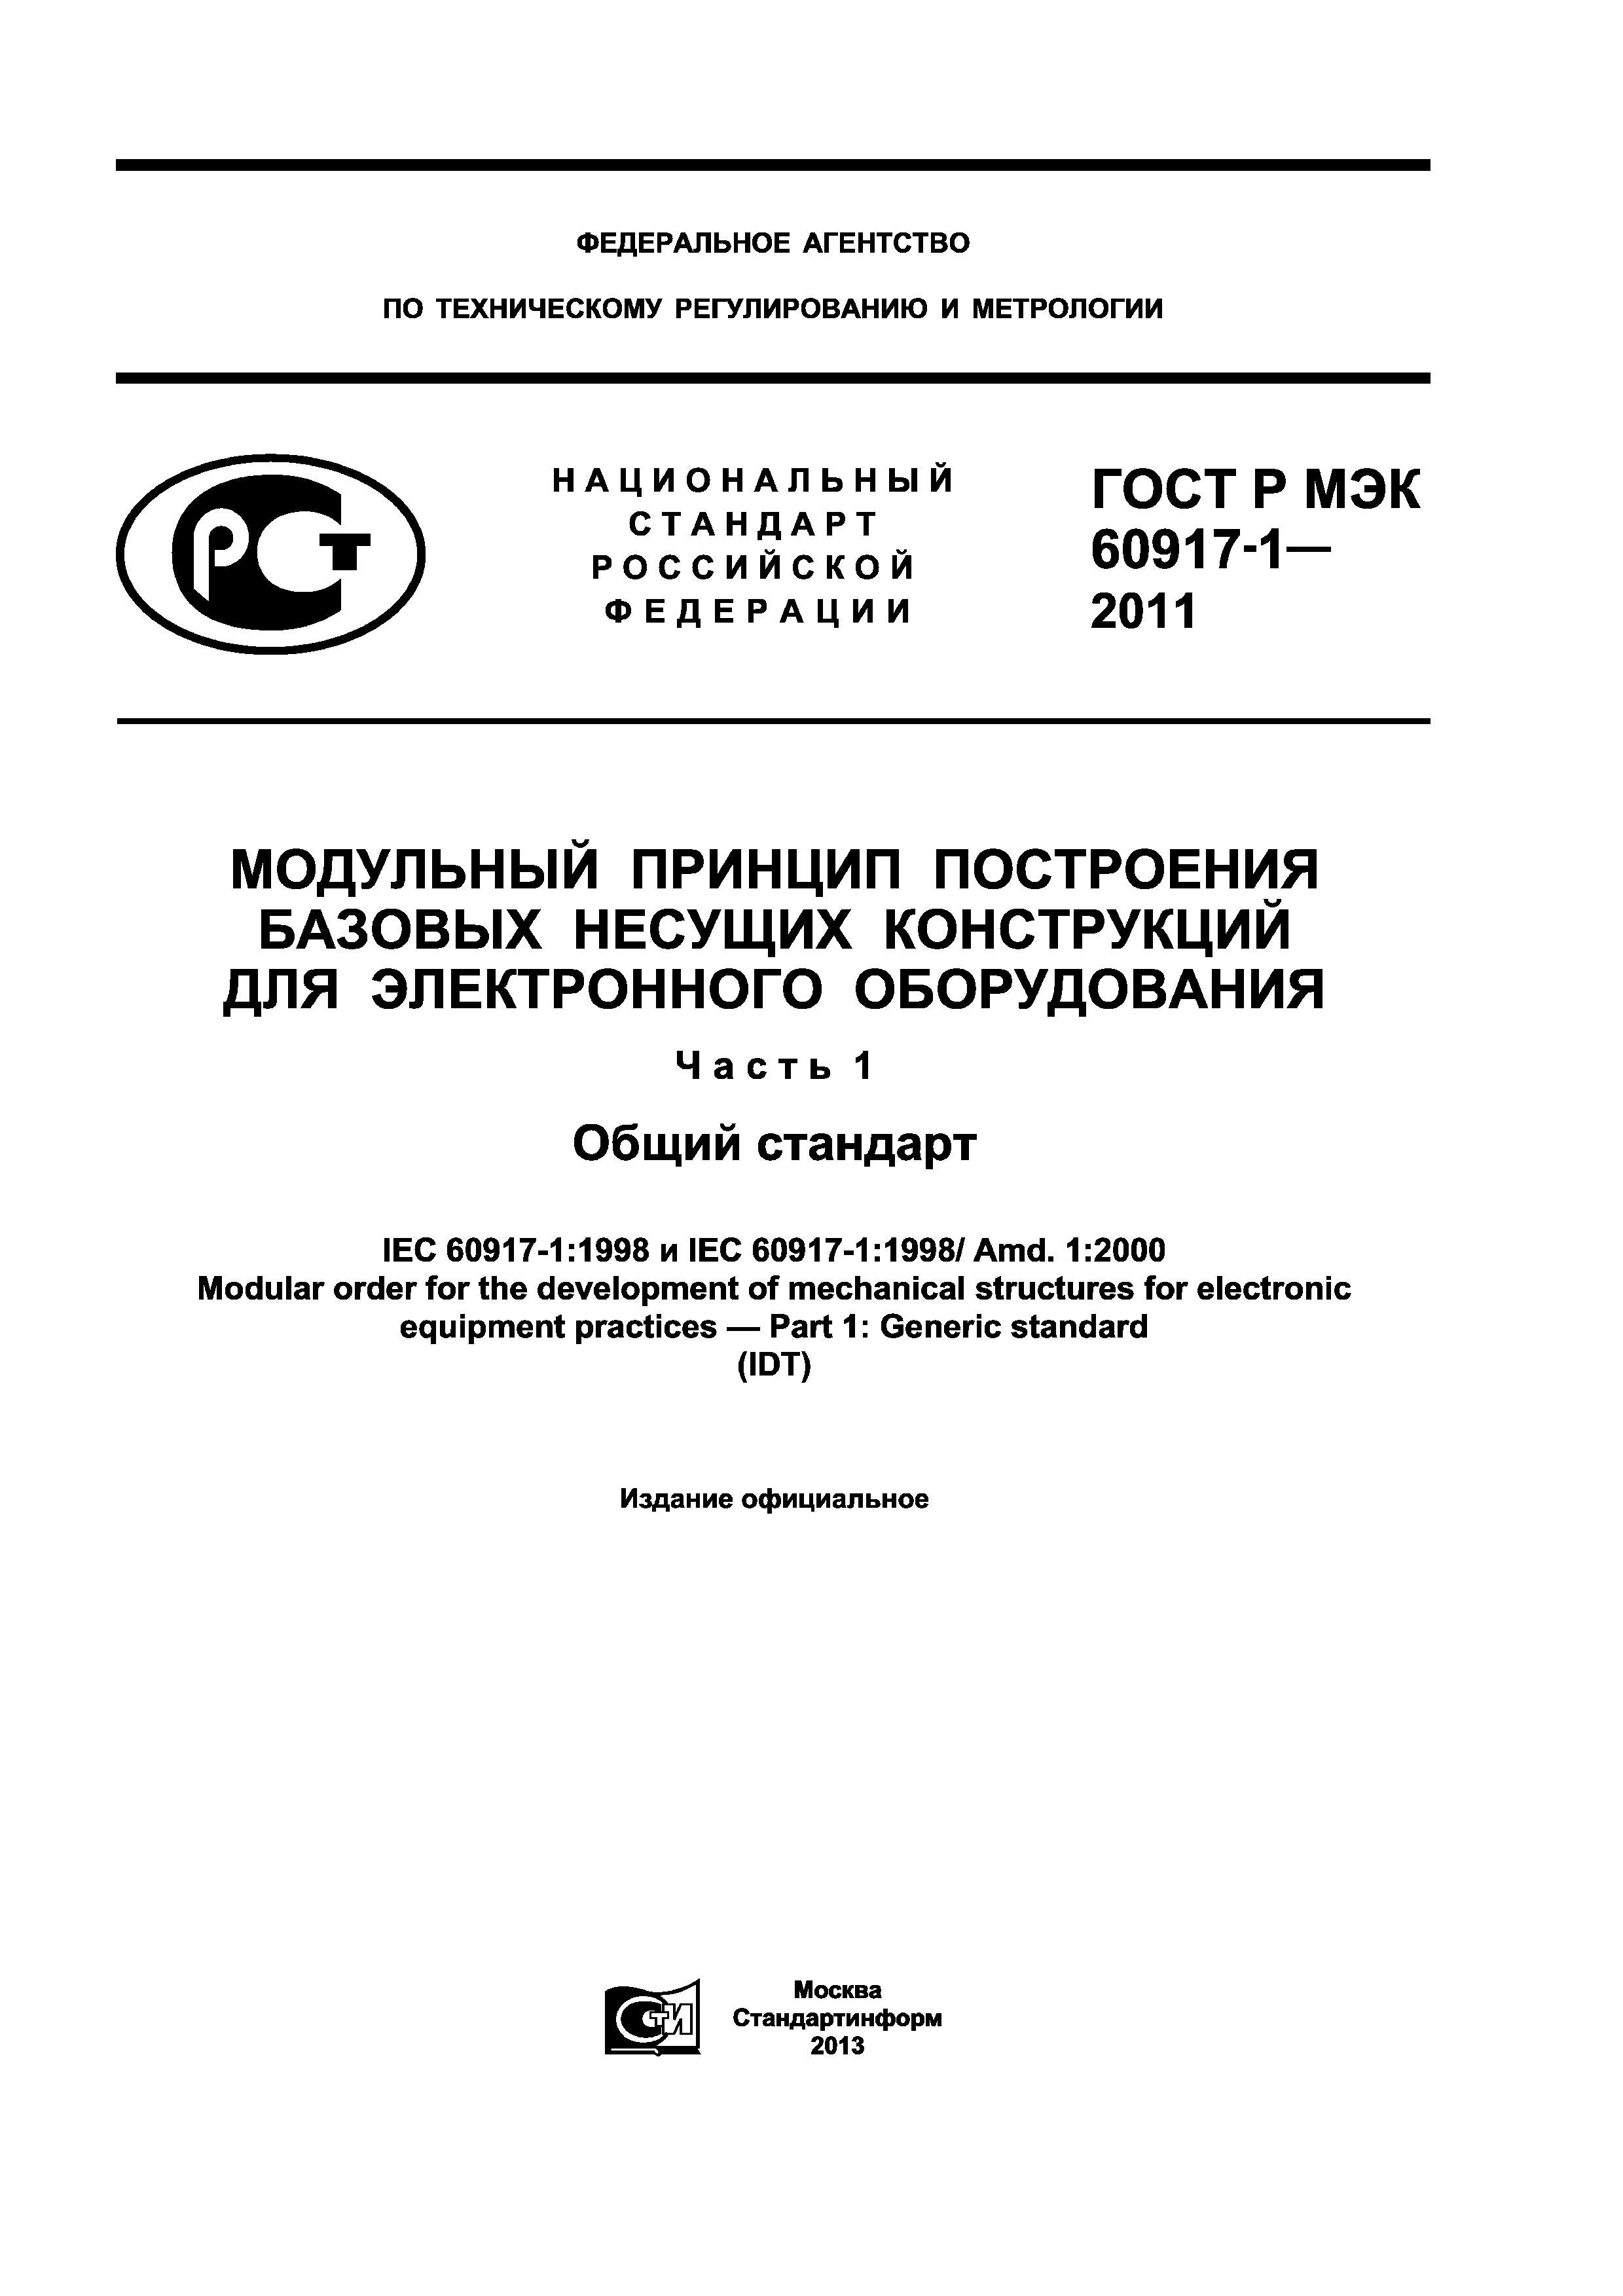 ГОСТ Р МЭК 60917-1-2011